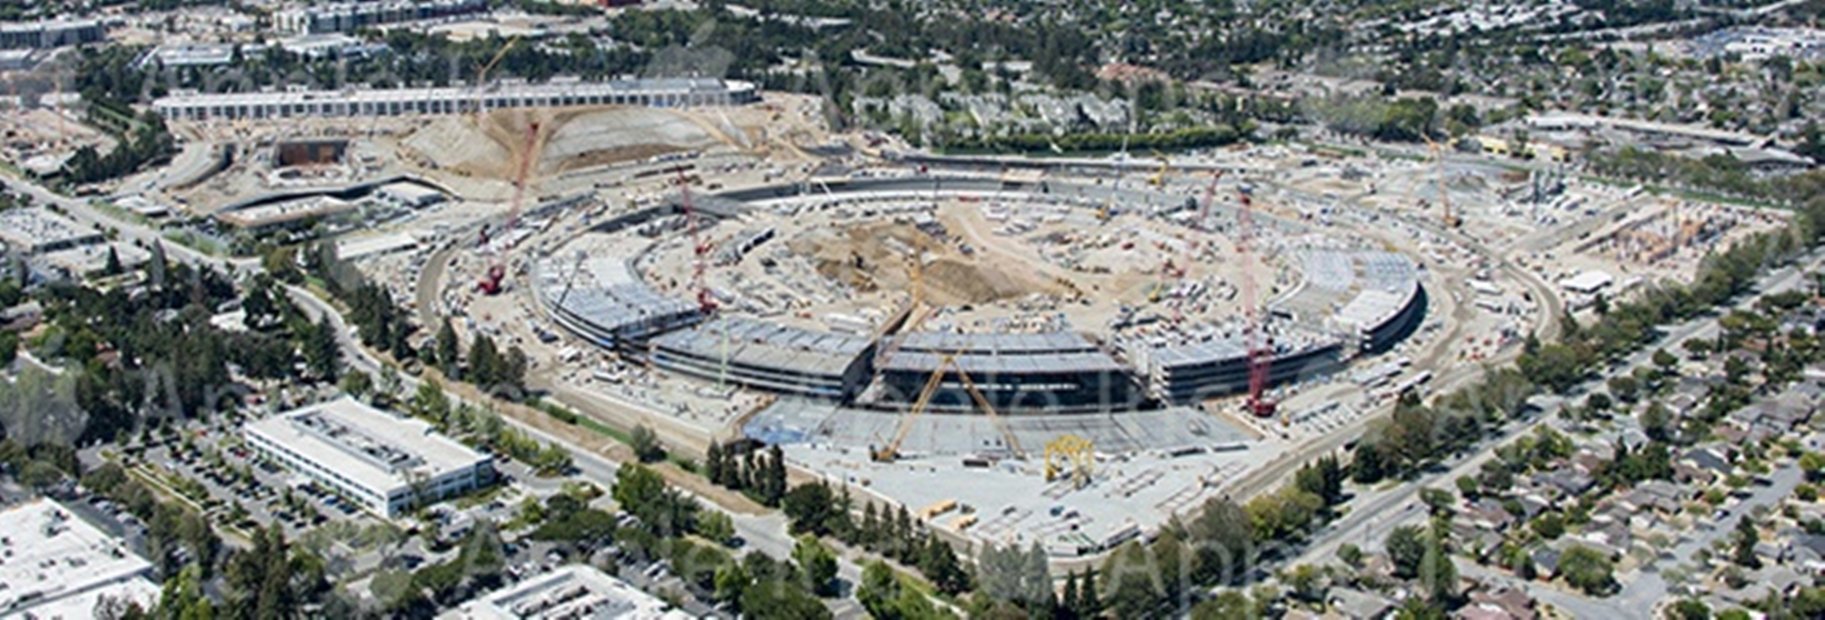 Campus de Apple 2 de julio de 2015